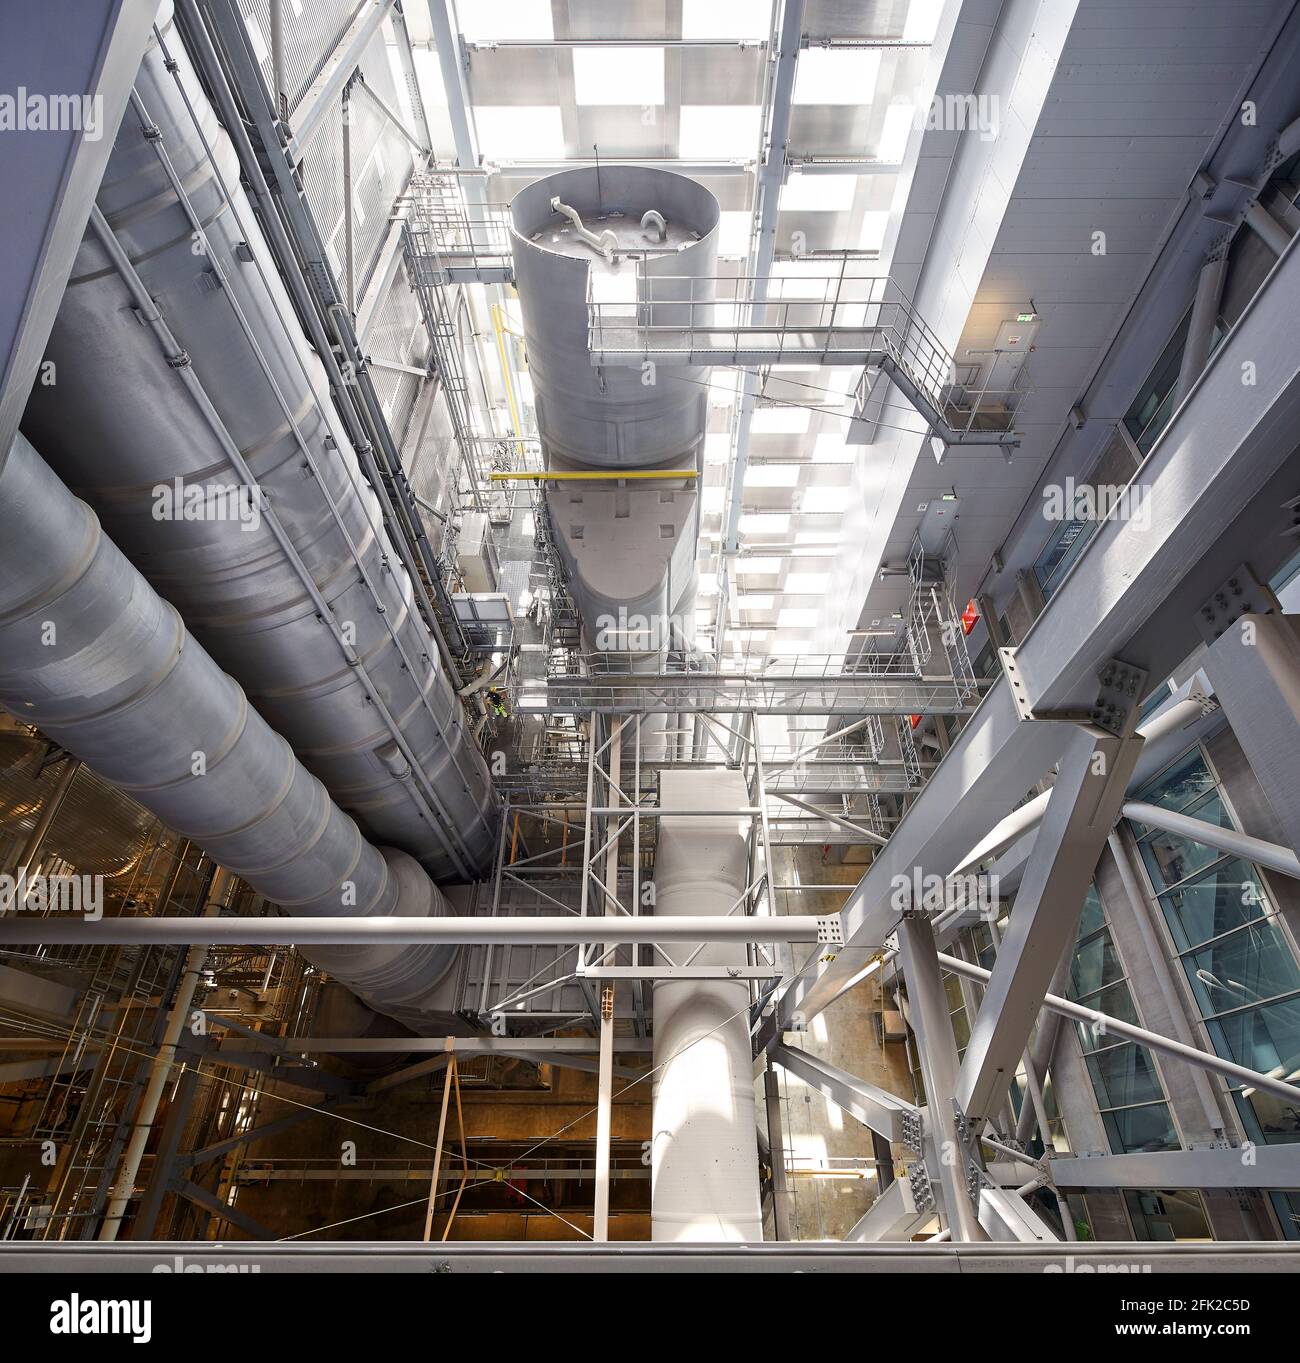 Interno dell'impianto industriale. Centrale elettrica di CoppenHill, Copenhagen, Danimarca. Architetto: BIG Bjarke Ingels Group, 2019. Foto Stock